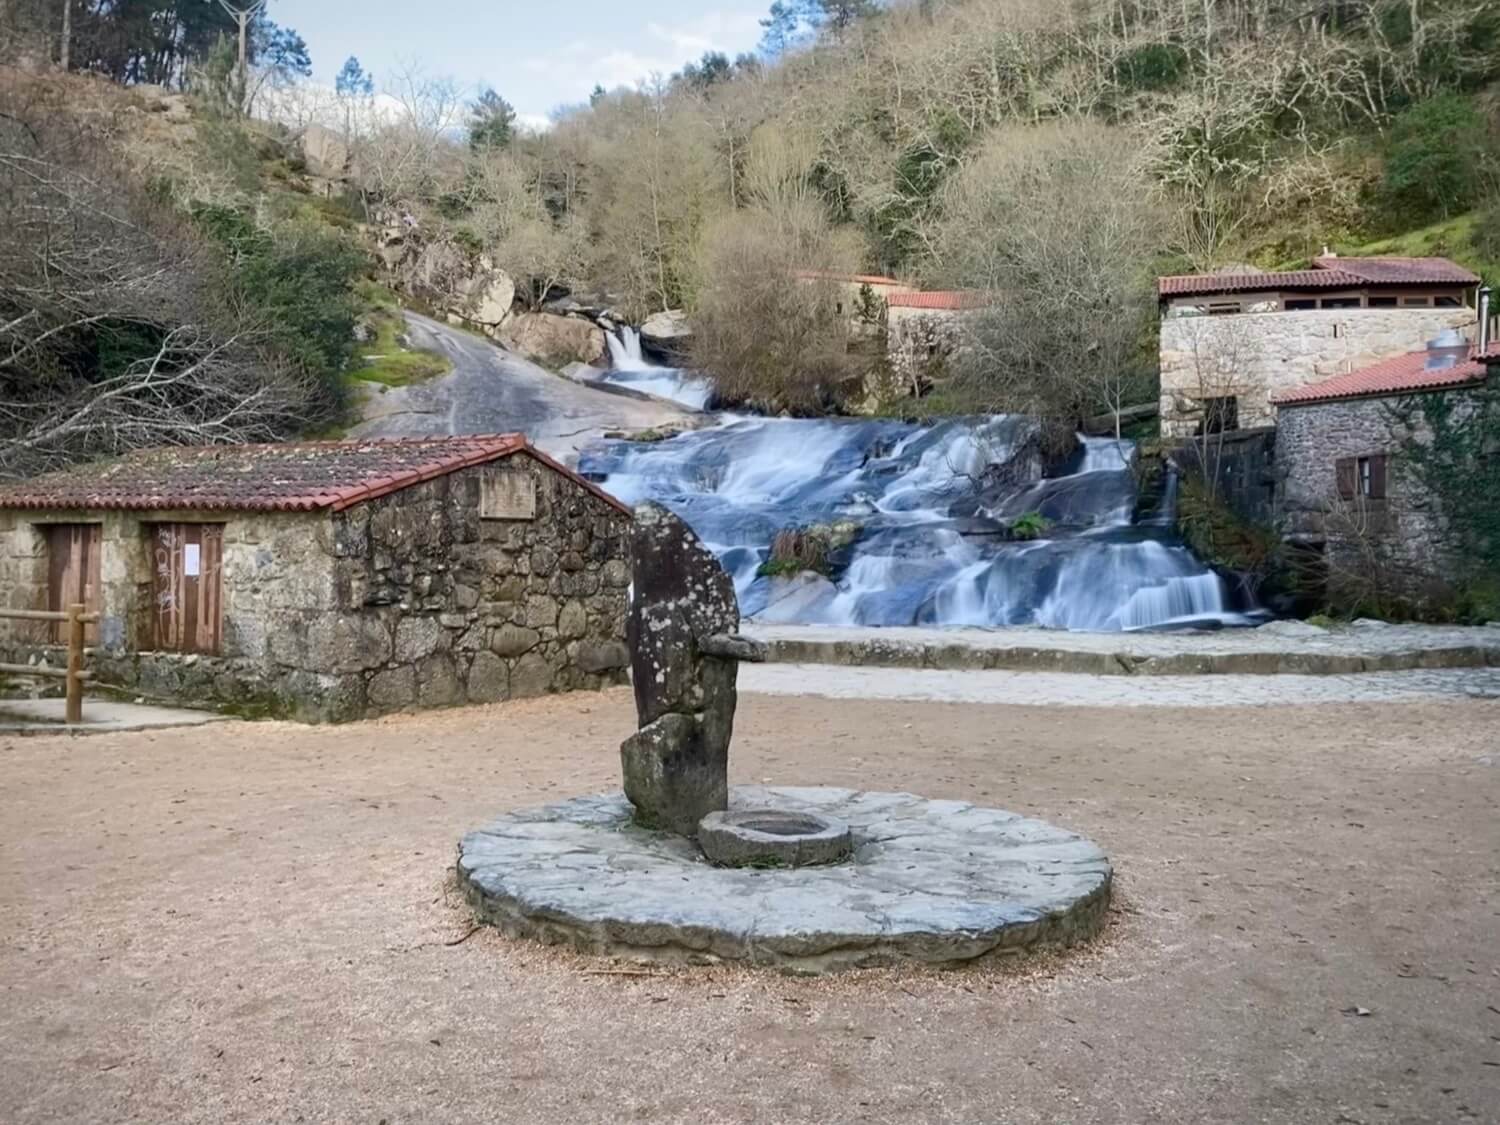 Parque Natural de Barosa Guíate Galicia